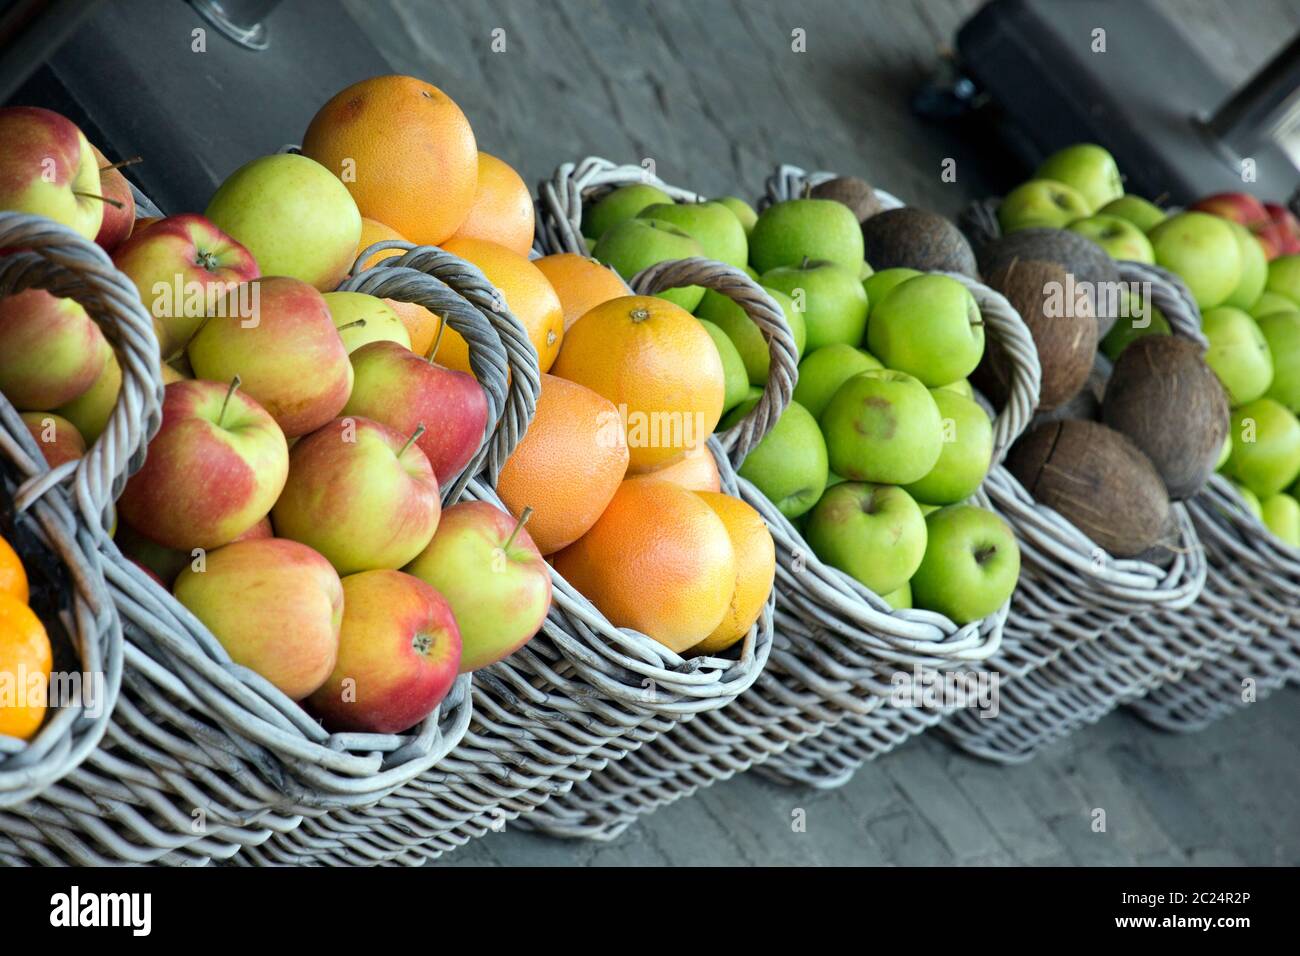 Weidenkörbe mit verschiedenem Obst vor dem Geschäft Stock Photo